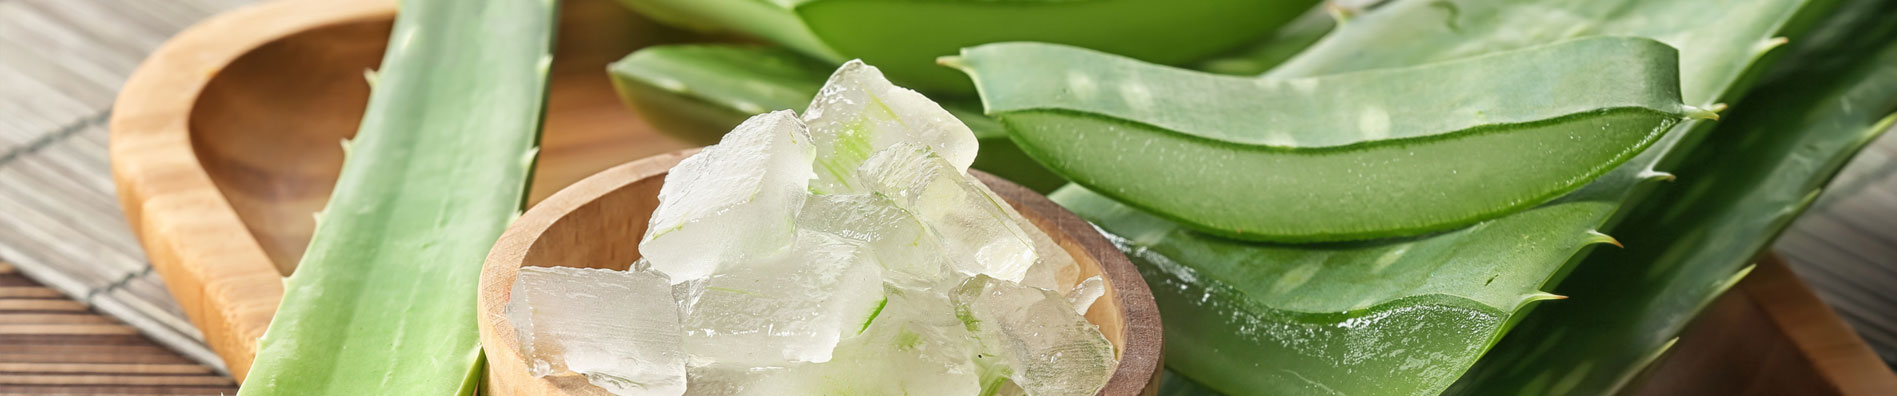 Beneficios del Aloe vera para la piel 